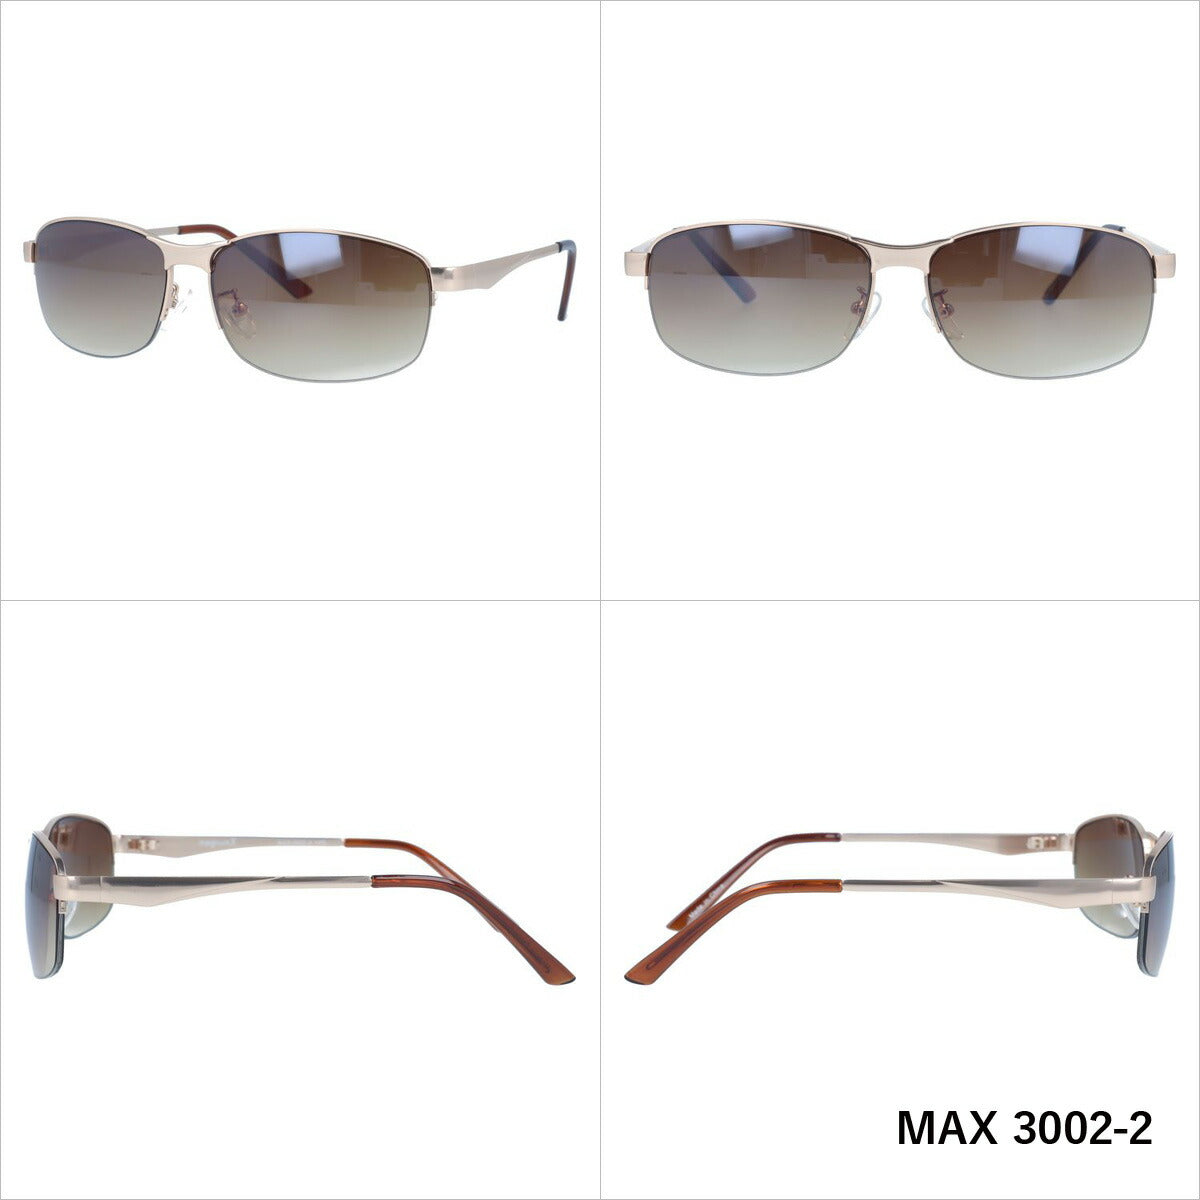 マグナムエックス サングラス ミラーレンズ magnumX MAX 3002 全3カラー 58サイズ スクエア メンズ レディース 紫外線対策 UVカット おしゃれ プレゼント ギフト